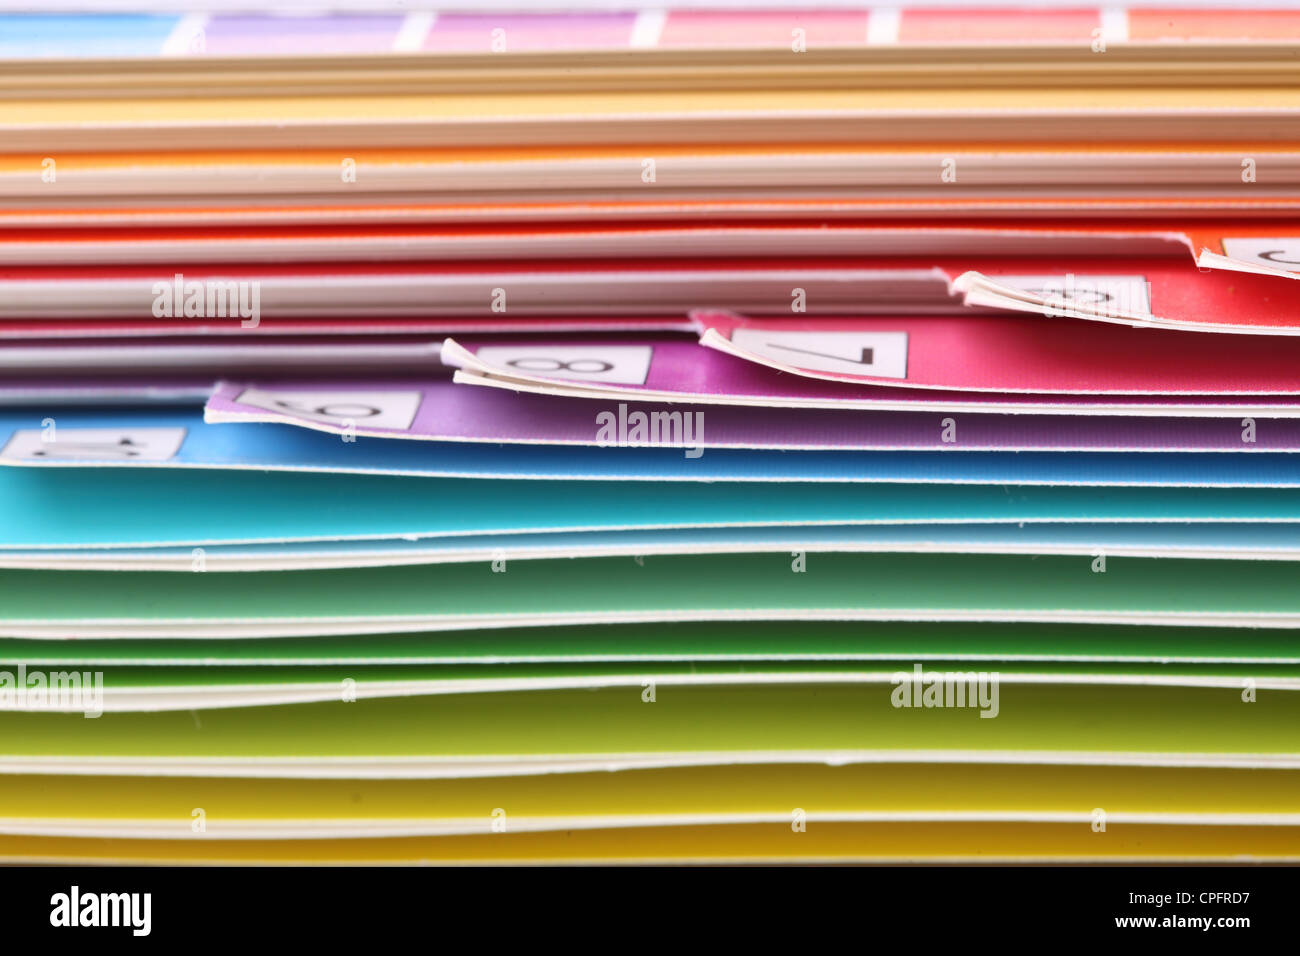 Textur Farbe Struktur Linie abstrakte Hintergrundpapier Stockfoto